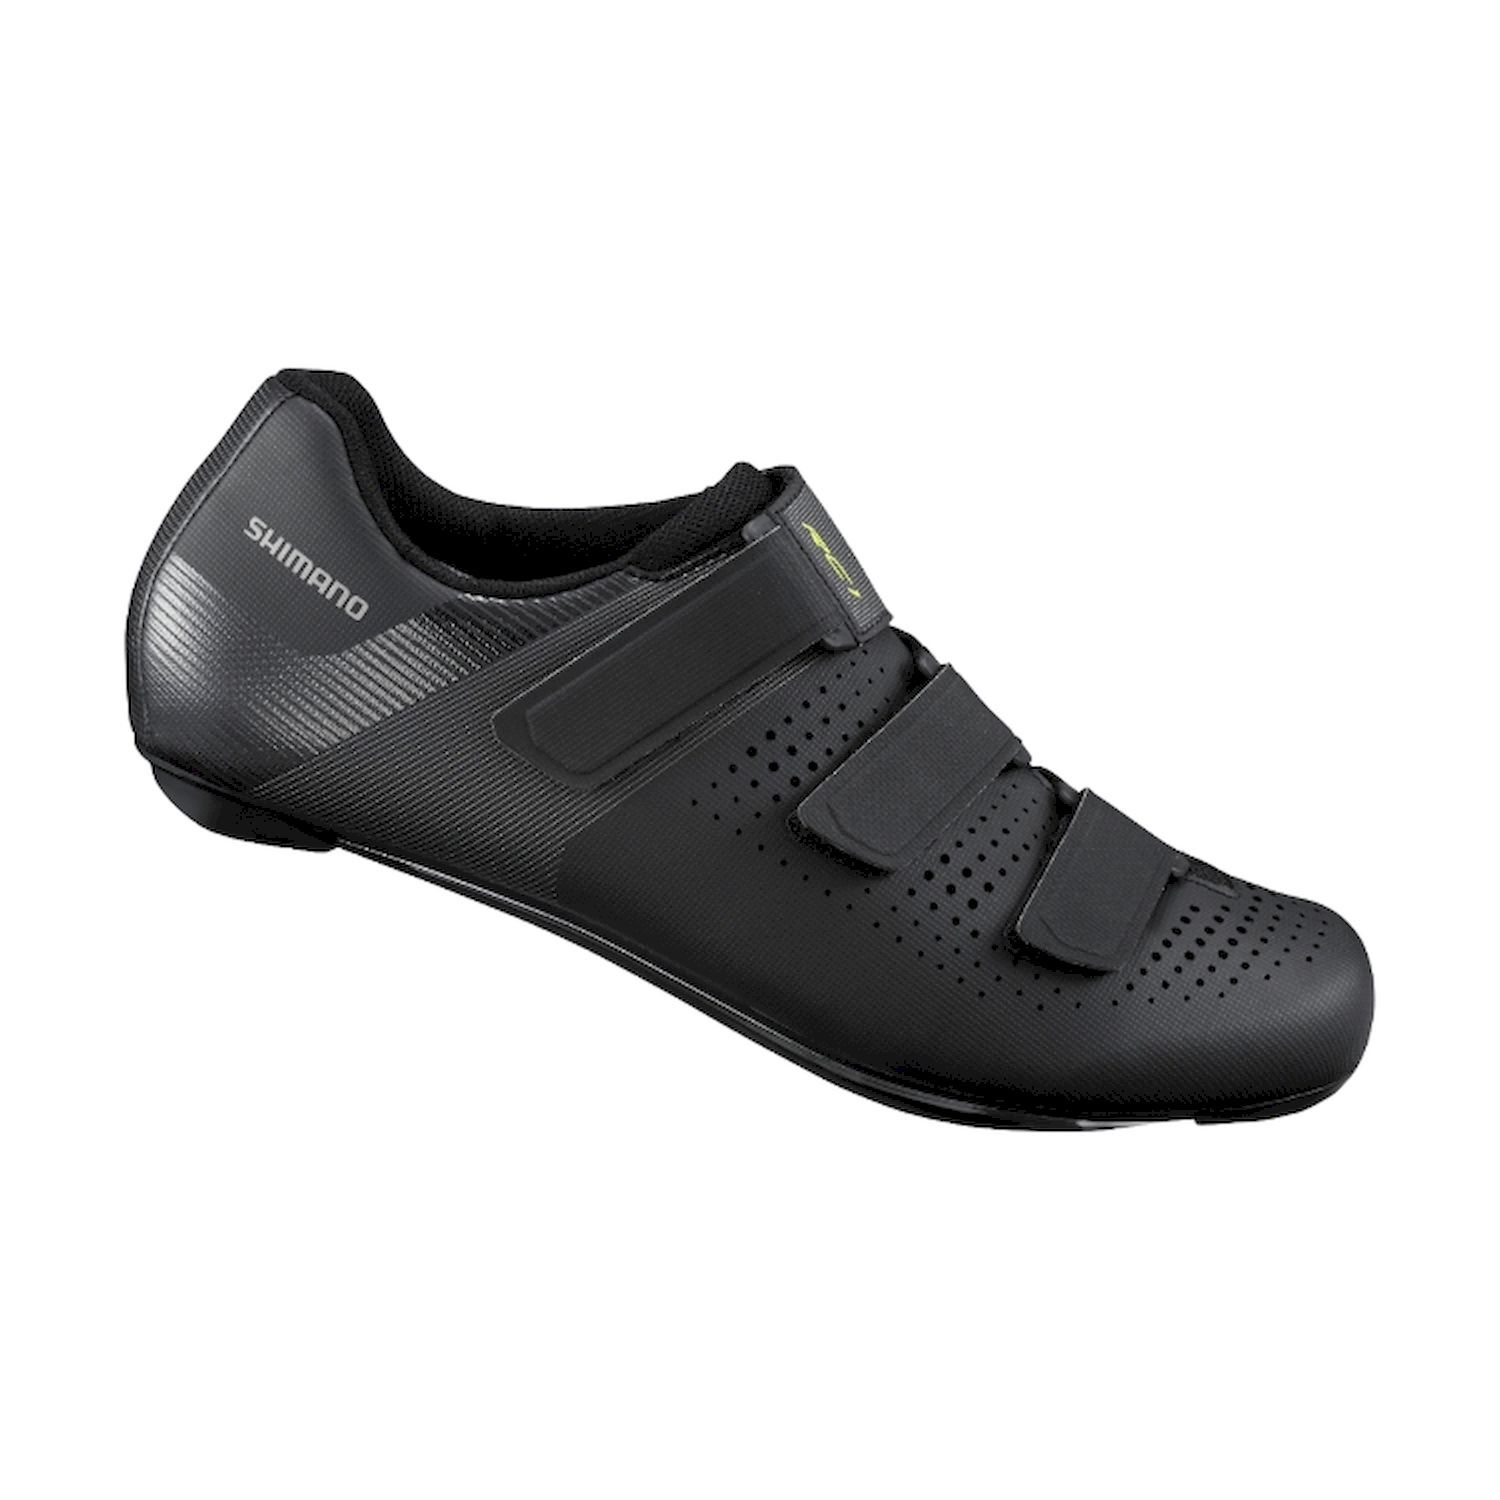 Shimano RC100 - Cycling shoes - Men's